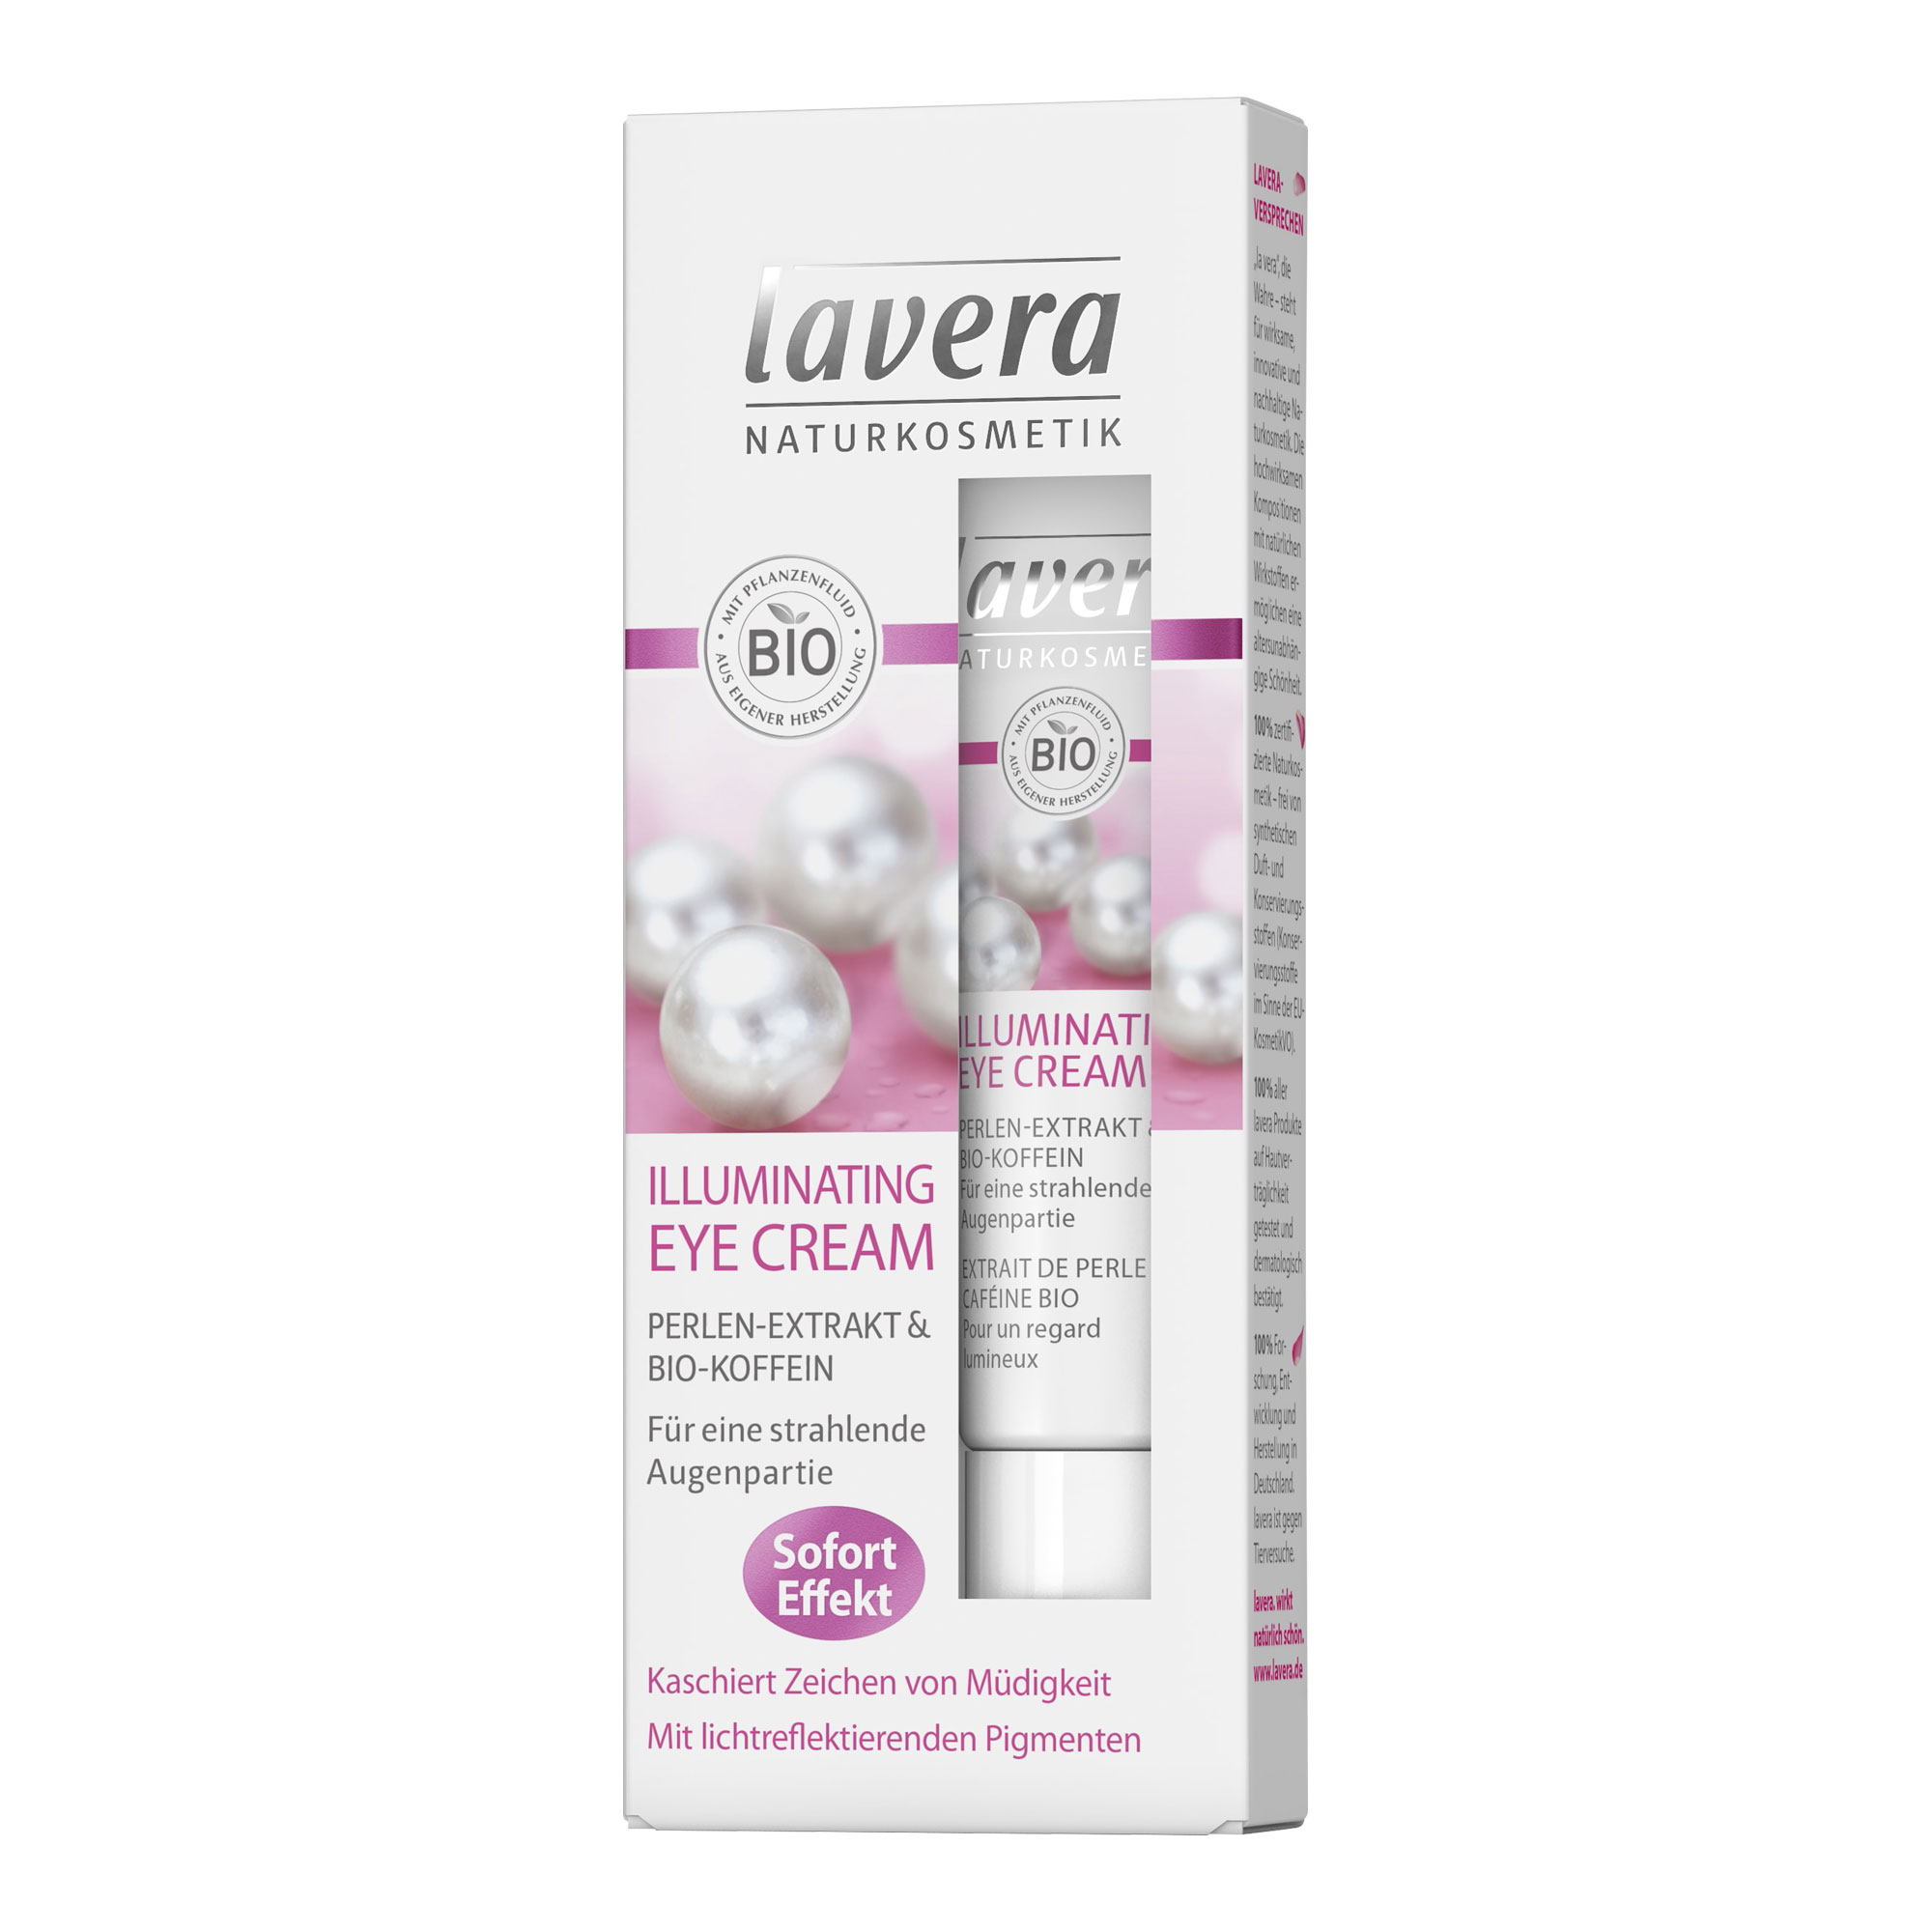 Die lavera Illuminating Eye Cream bringt die Augen ganz natürlich zum Strahlen